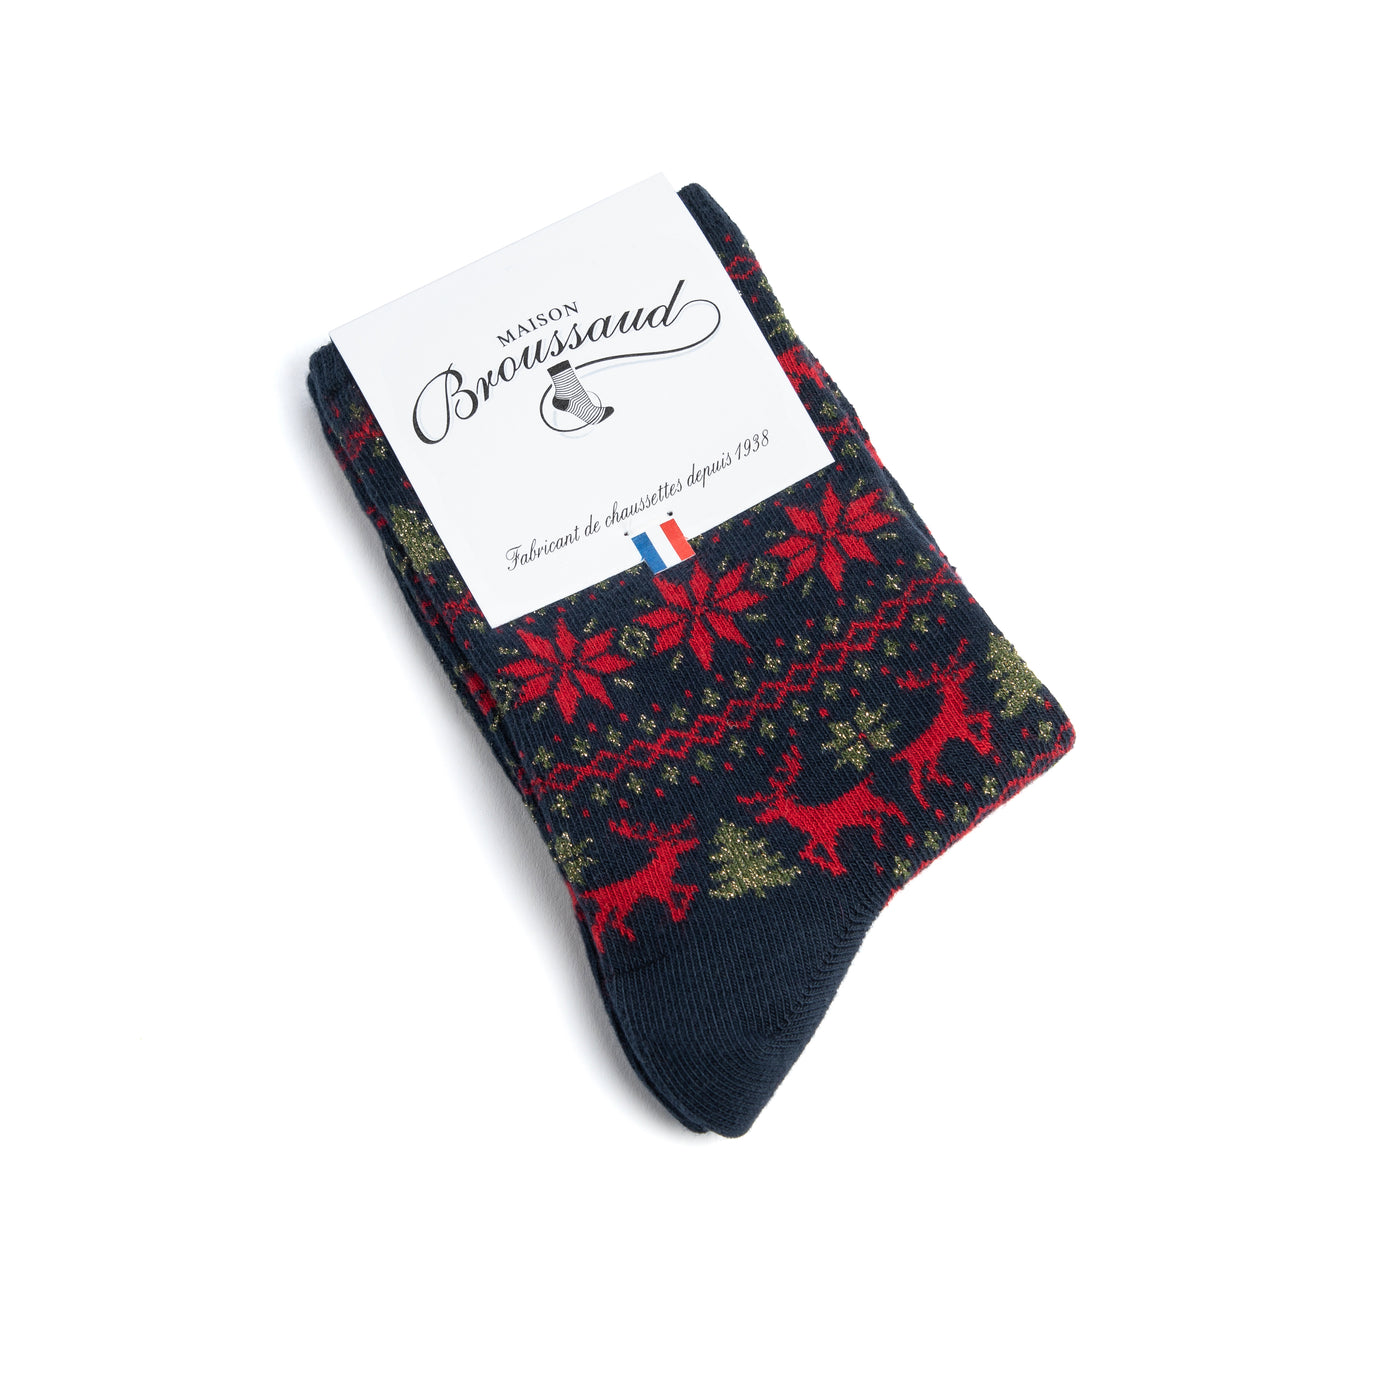 Chaussettes-chaussons rouge motif caviar pour femme - Laine